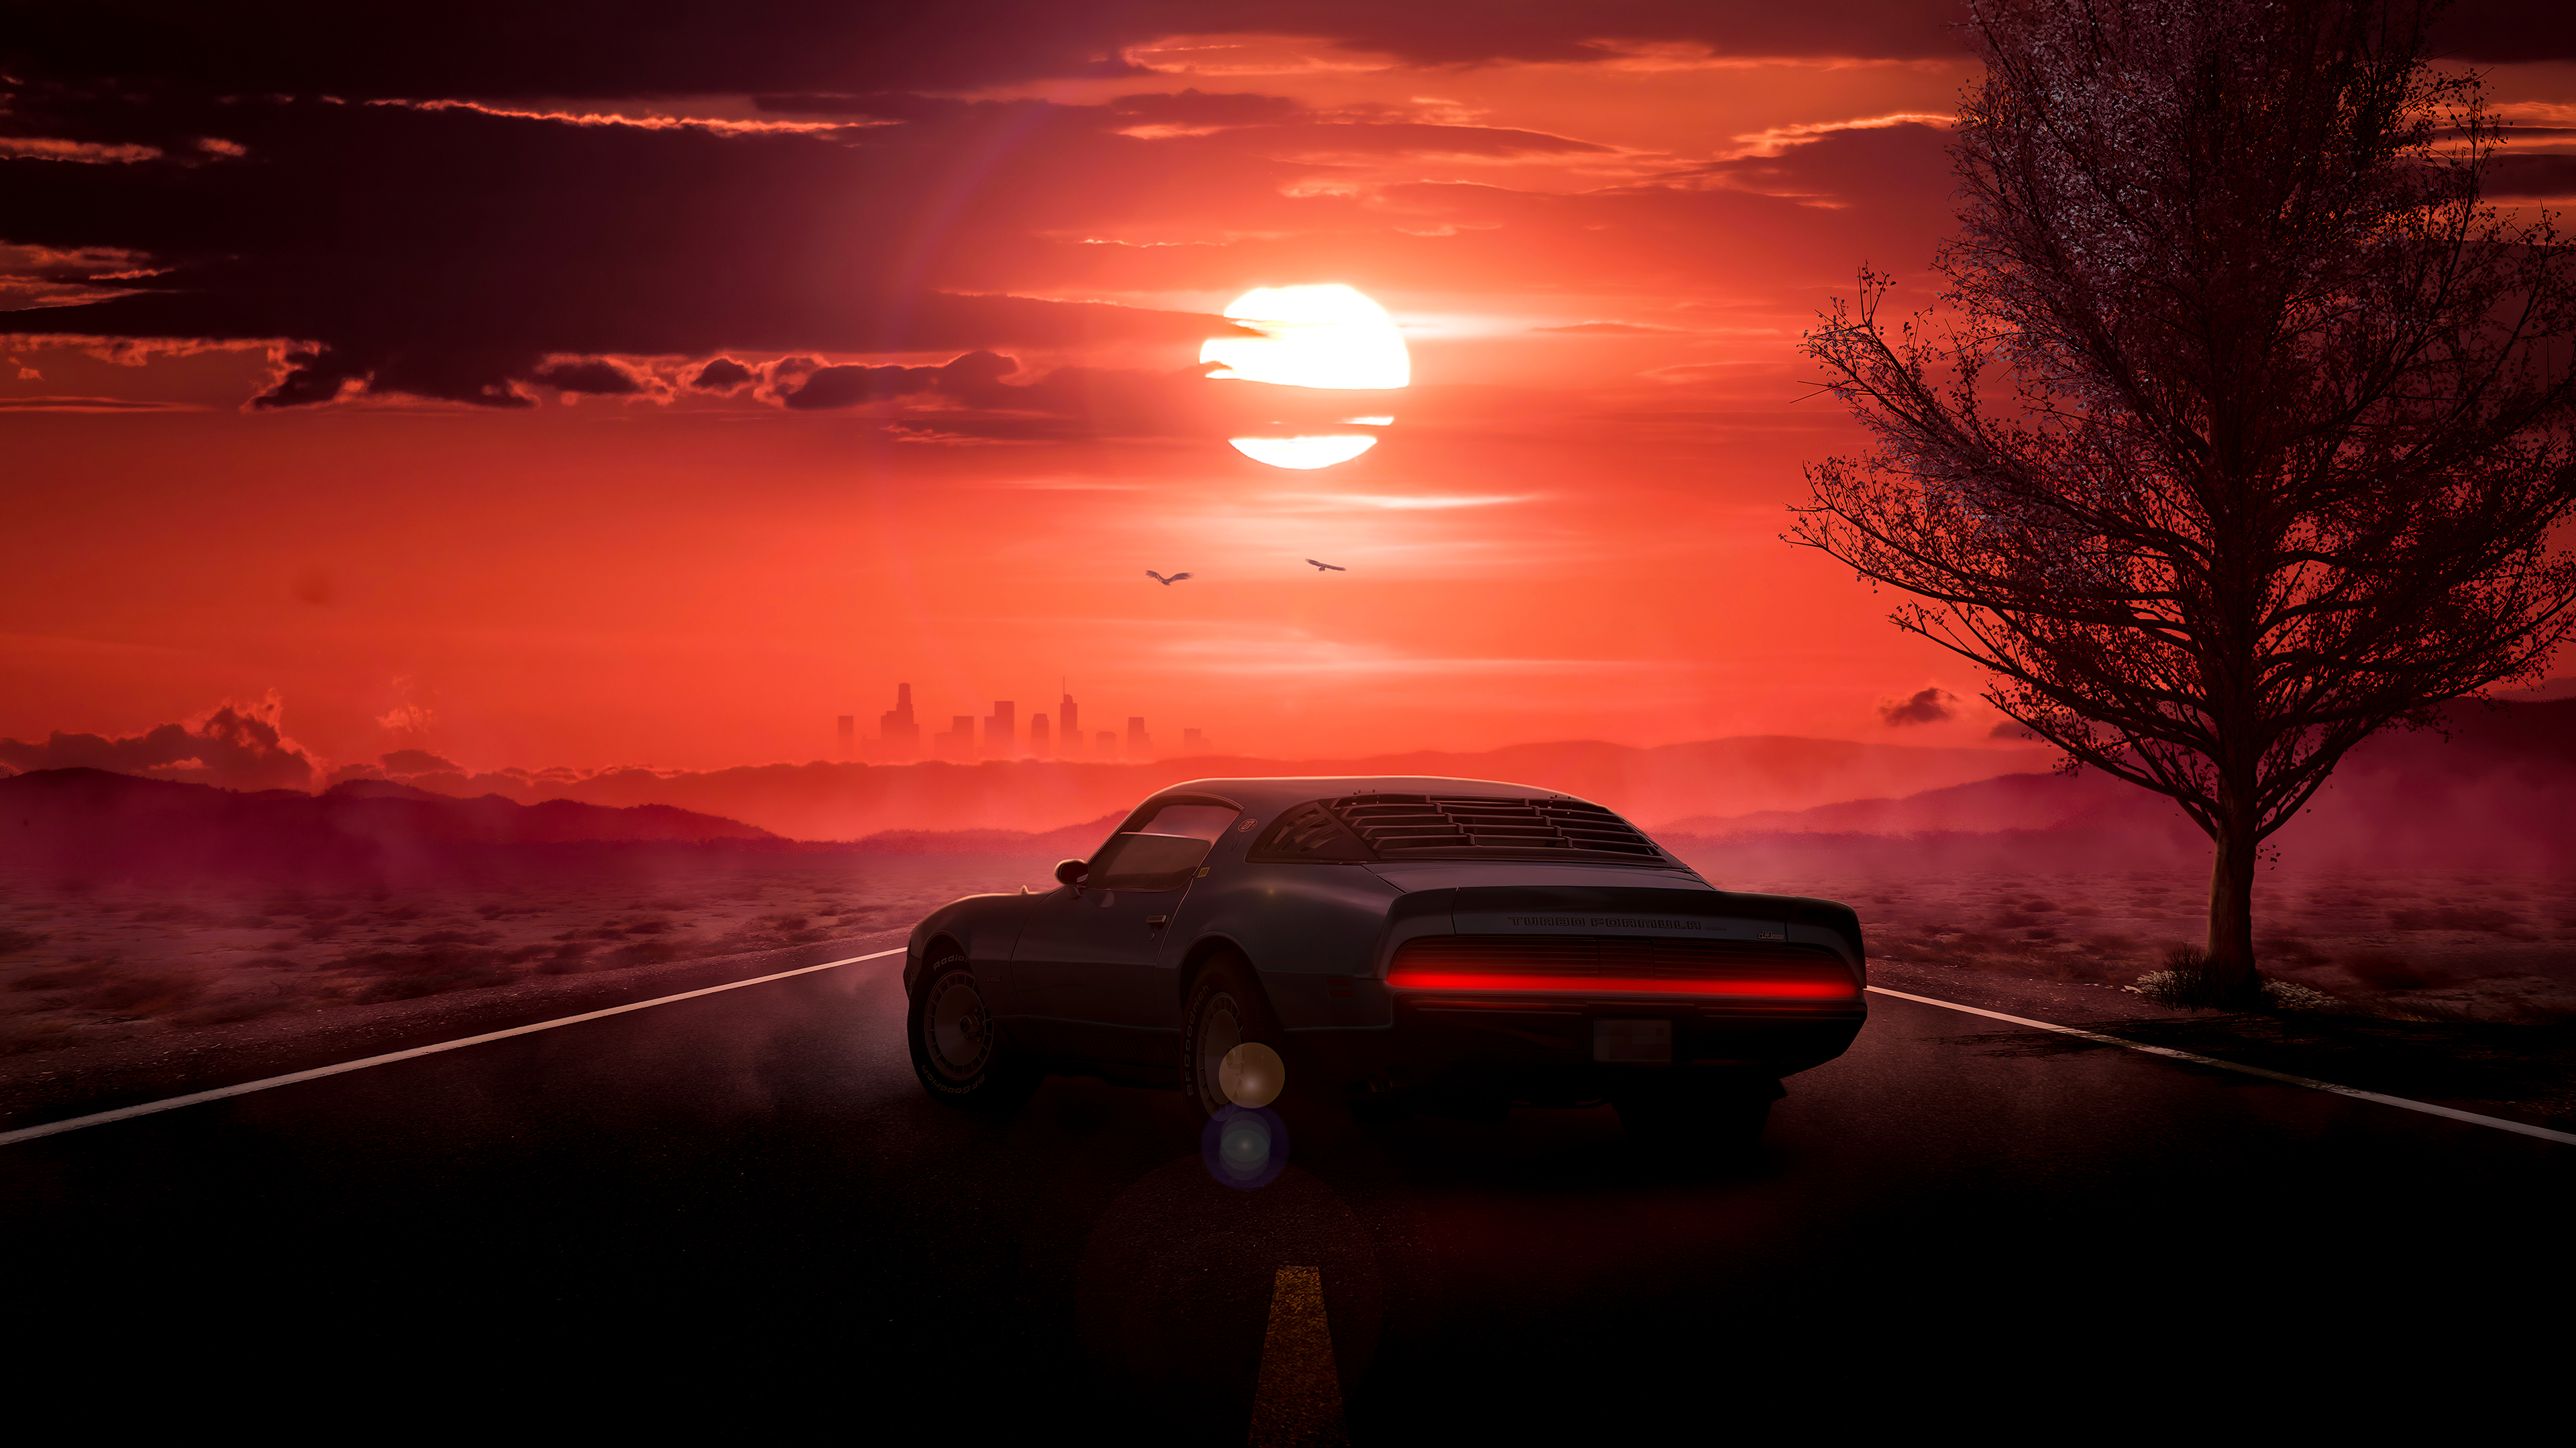 Tận hưởng những khoảnh khắc đầy mê hoặc với hình ảnh Car Sunset hôm nay, khi những chiếc xe được chụp trong khung cảnh hoàng hôn lãng mạn, tạo nên một bức tranh đẹp như trong mơ.